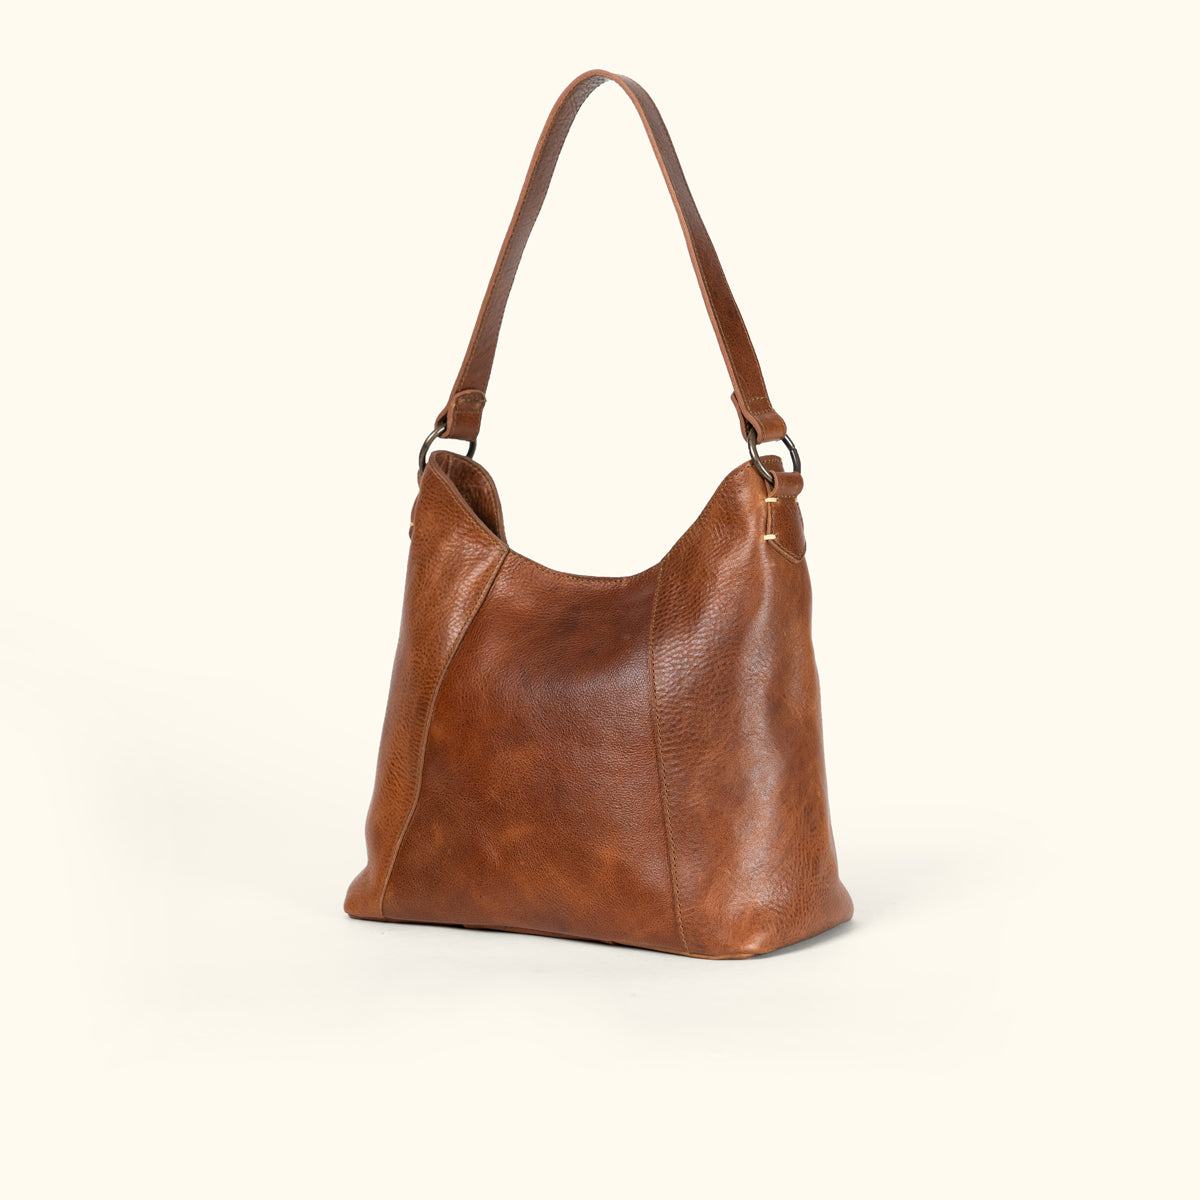 Women's Leather Hobo Bag